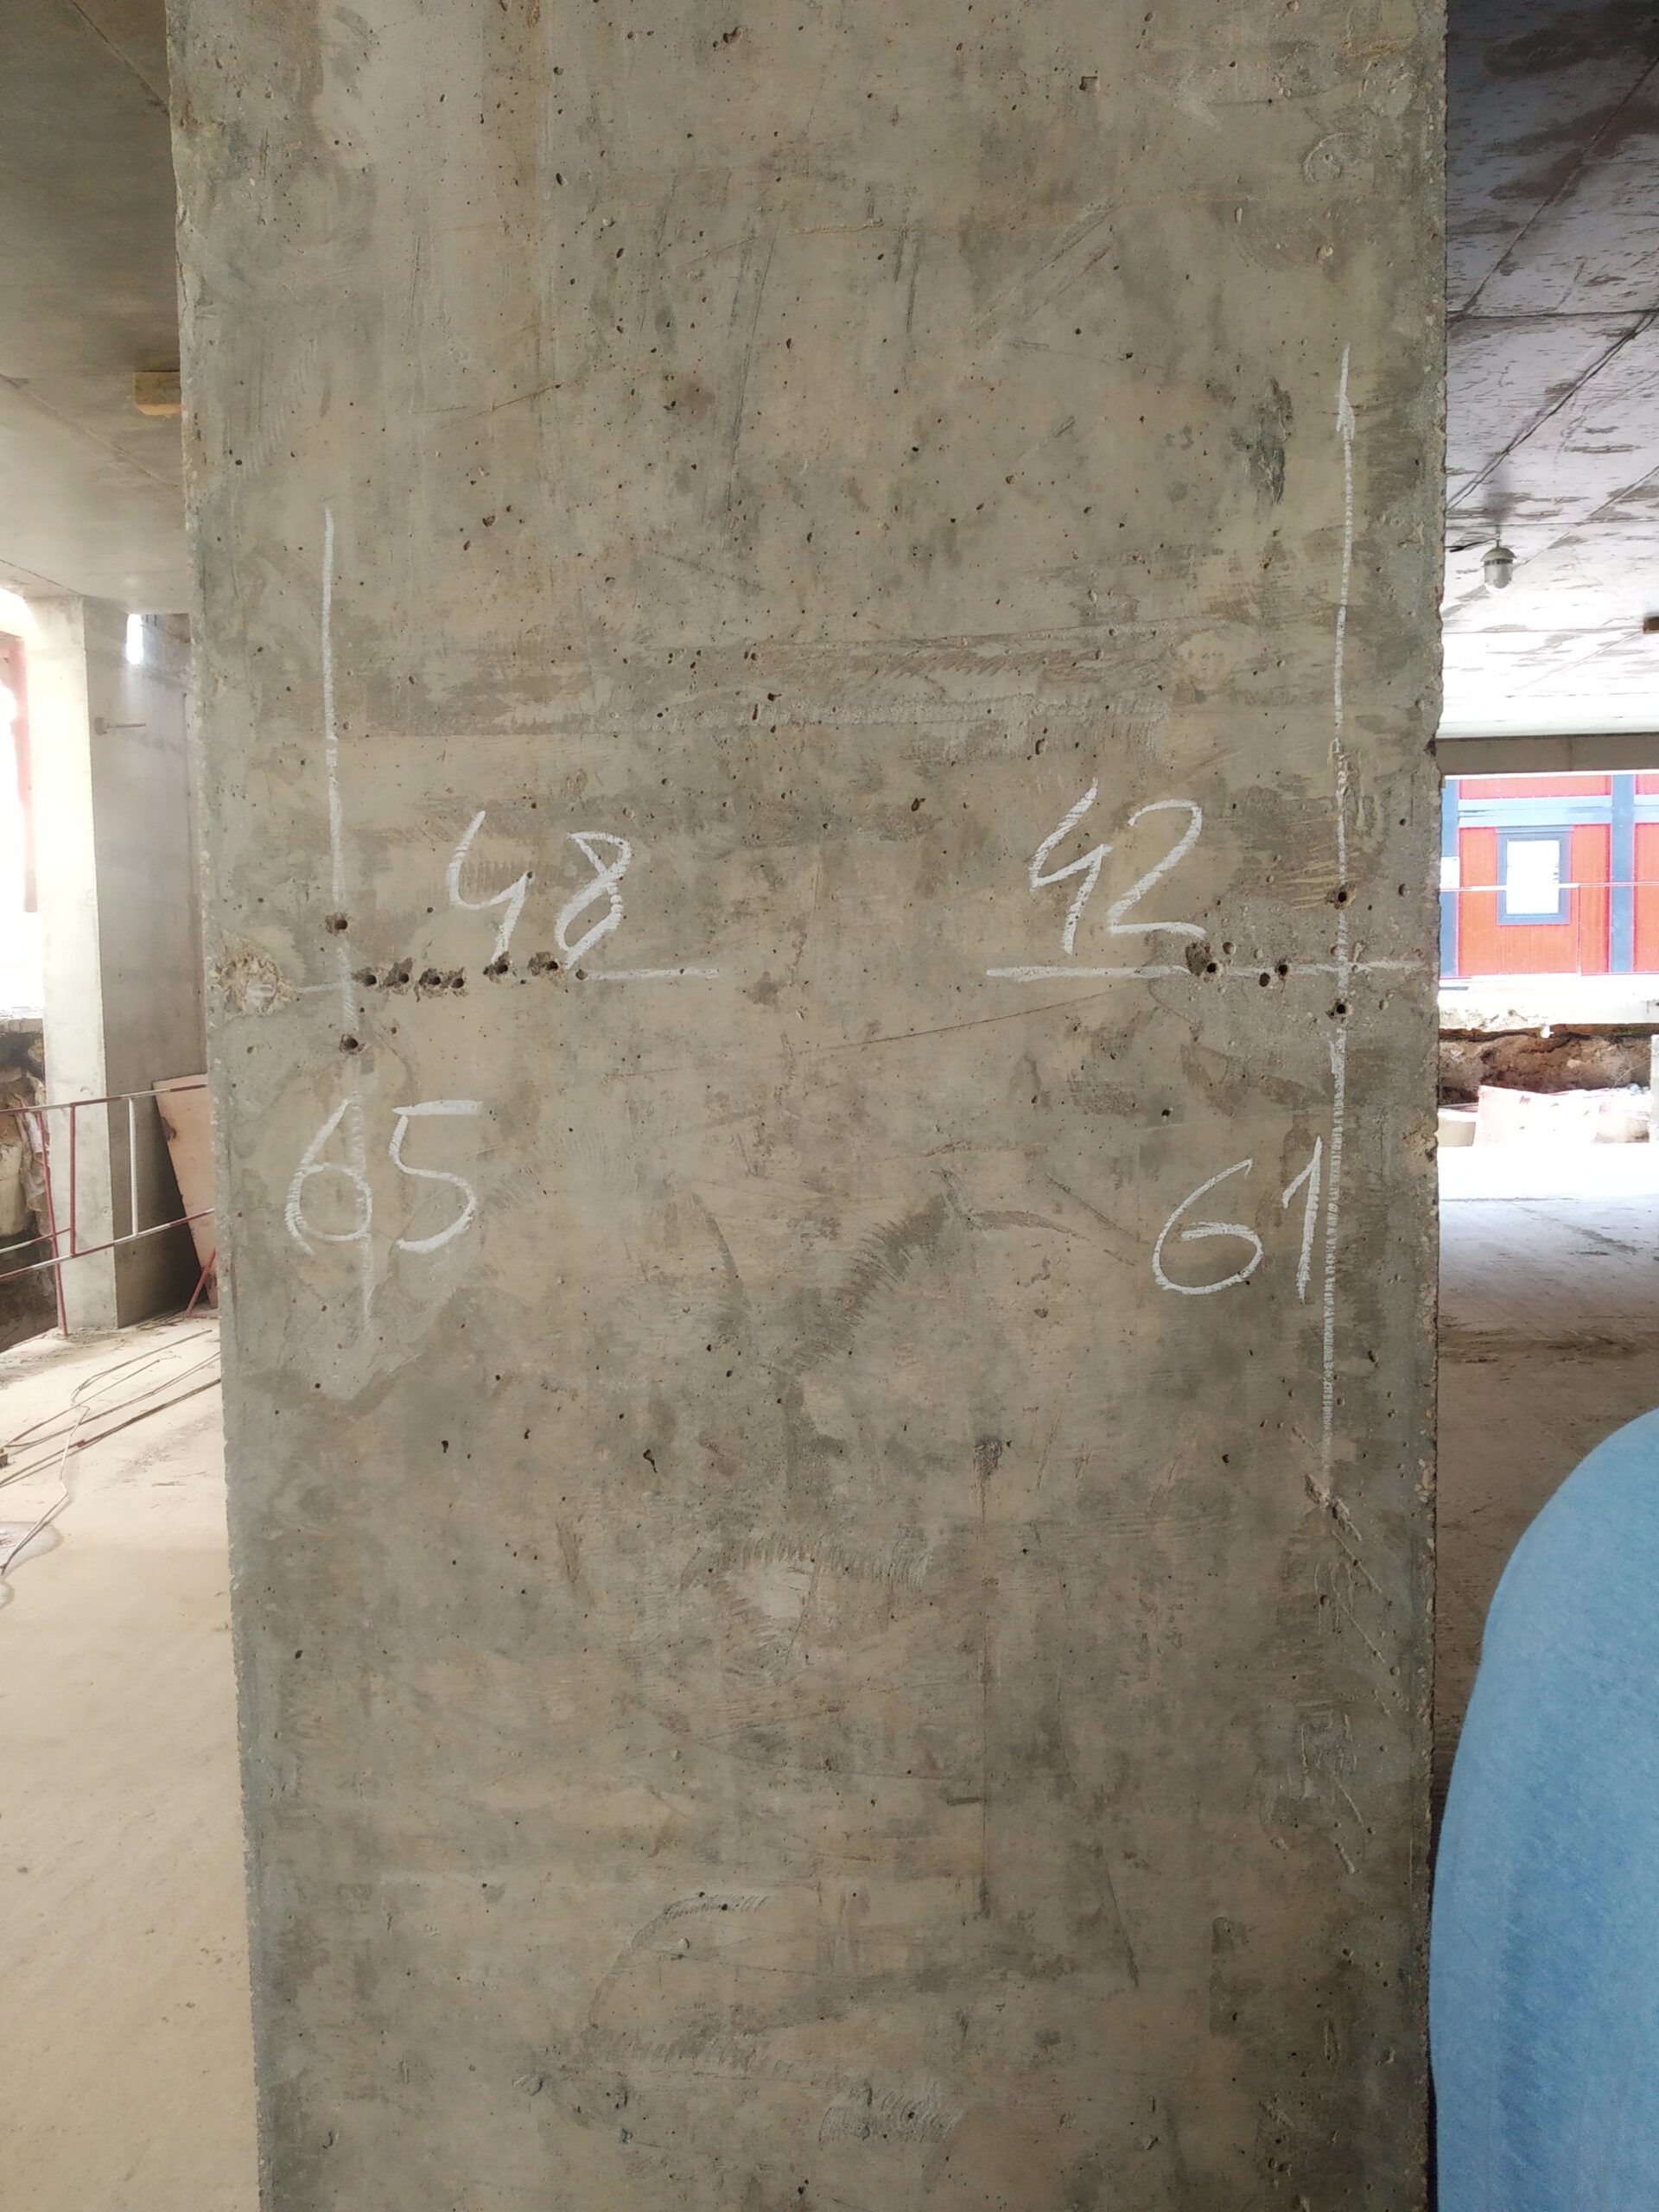 <h2>Определение защитного слоя бетона и расположения арматуры в конструкции</h2>